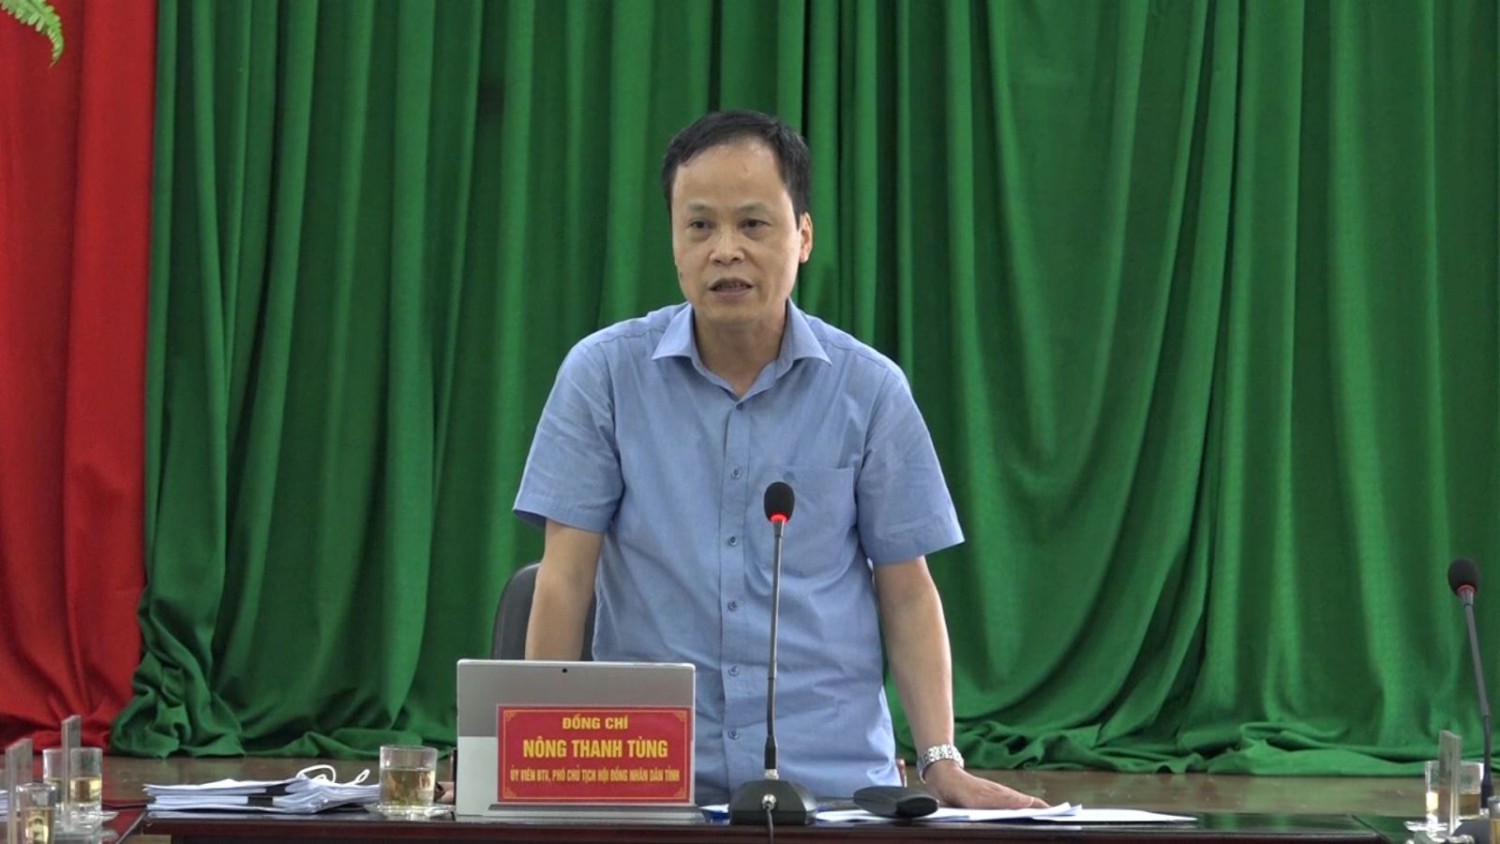 Đồng chí Nông Thanh Tùng, Ủy viên Ban Thường vụ Tỉnh ủy, Phó Chủ tịch HĐND tỉnh phát biểu tại buổi giám sát.